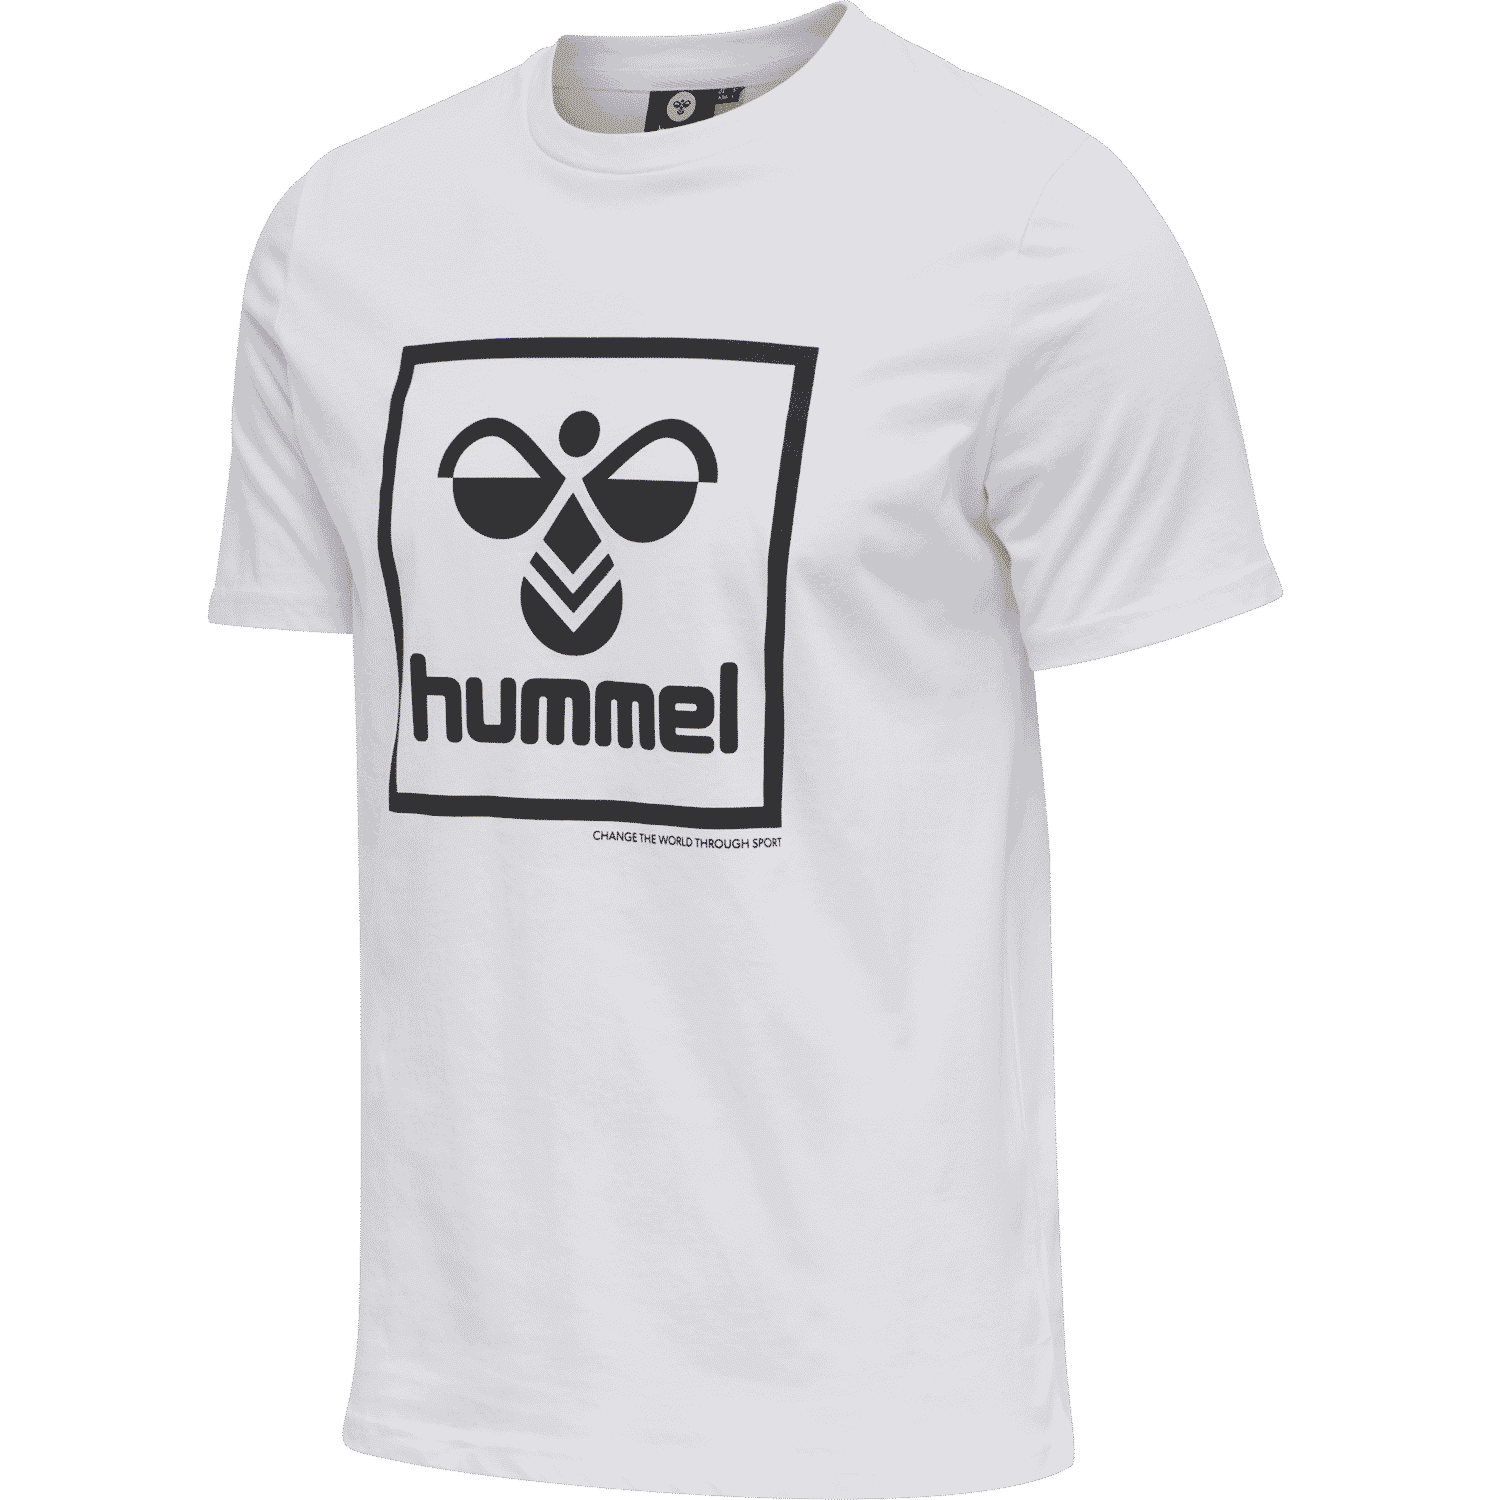 hummel - hmlISAM T-SHIRT - WHITE - L